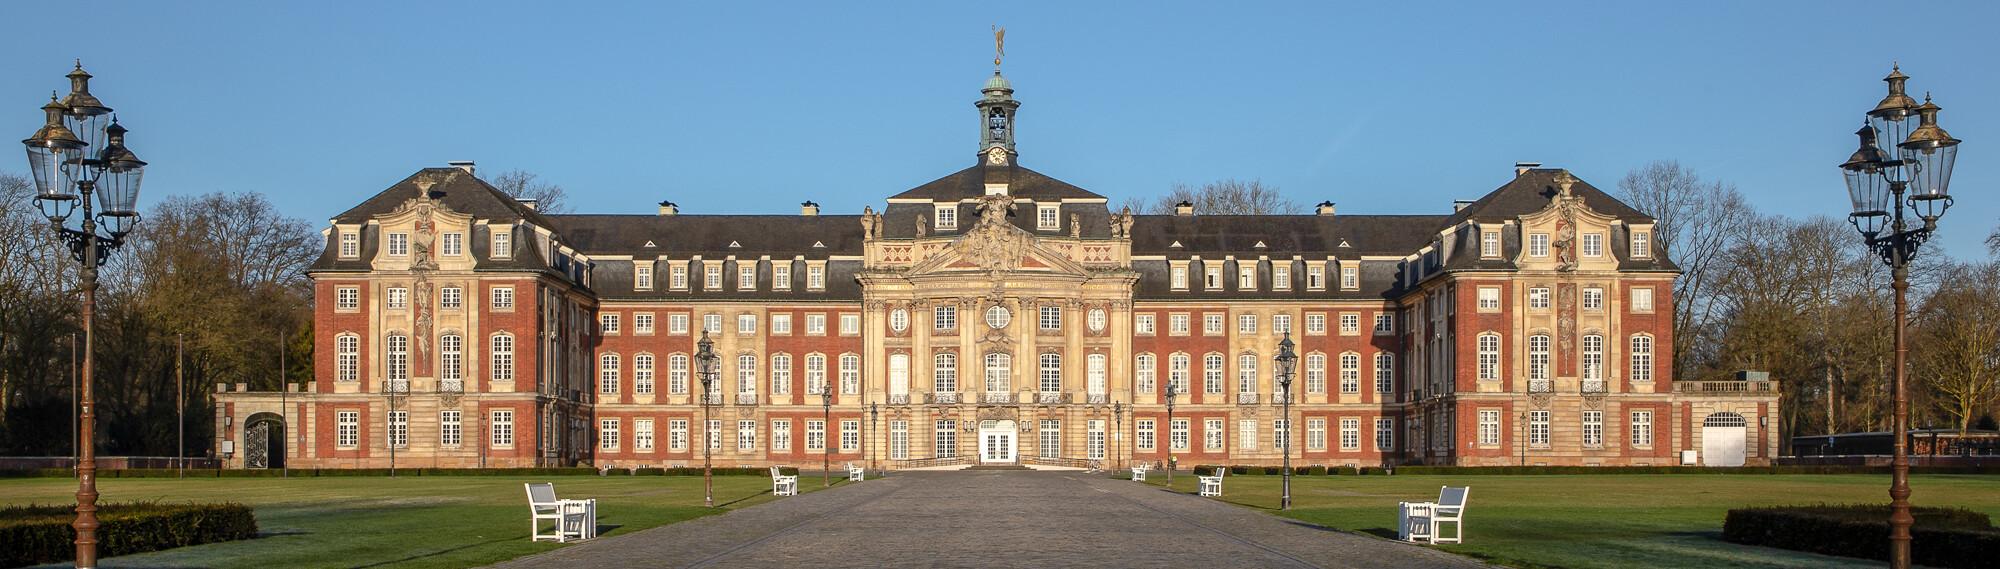 Dietmar Rabich / Wikimedia Commons:Münster, Fürstbischöfliches Schloss, CC BY-SA 4.0